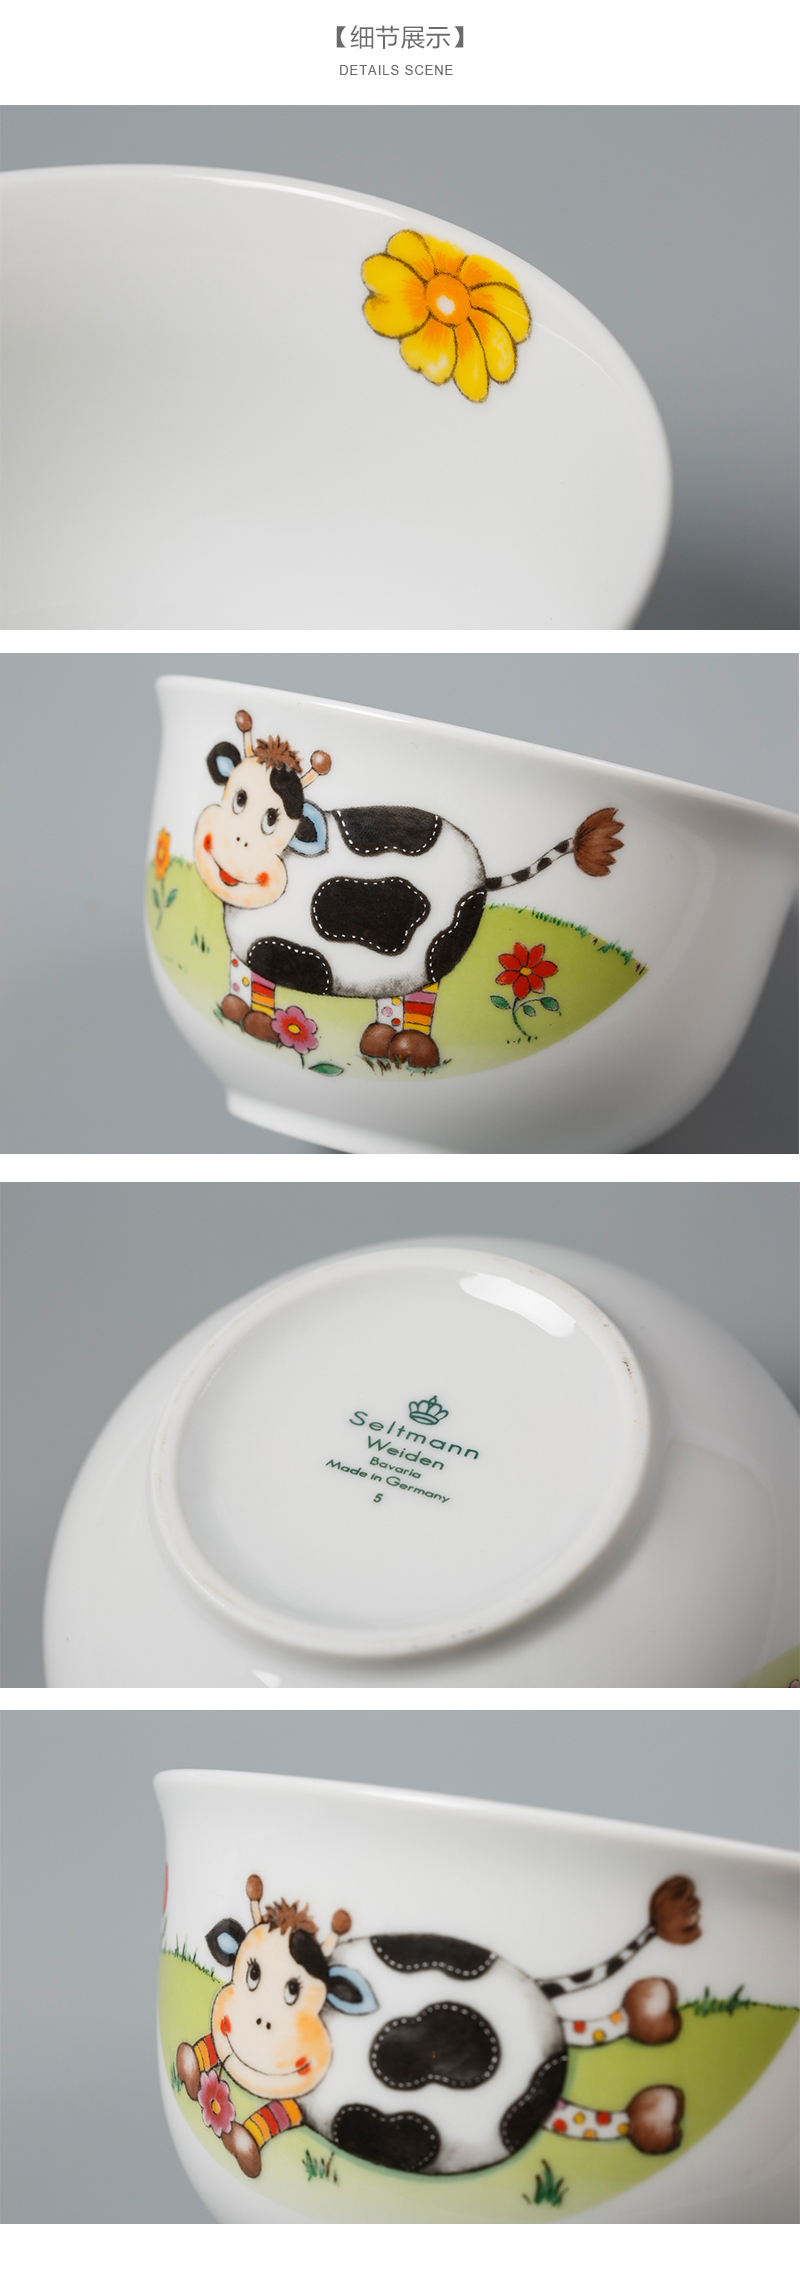 德国Seltmann Weiden陶瓷碗细节展示